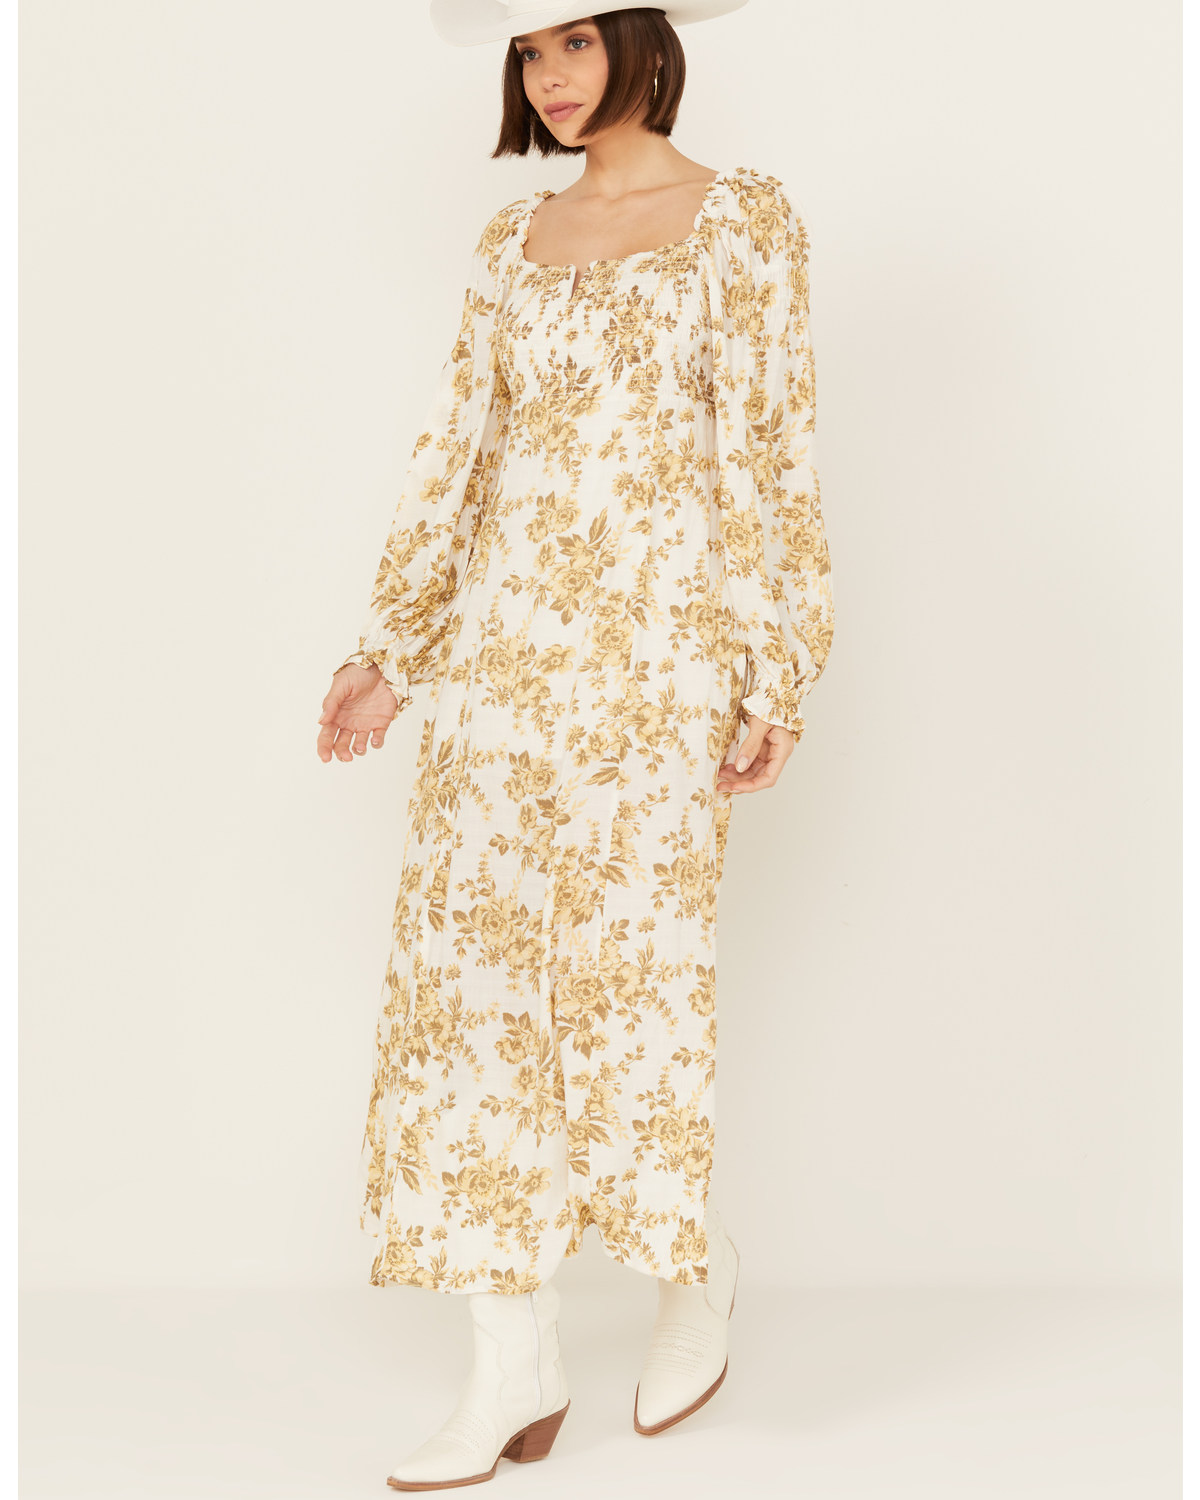 Free People Women's Jaymes Floral Print Long Sleeve Midi Dress